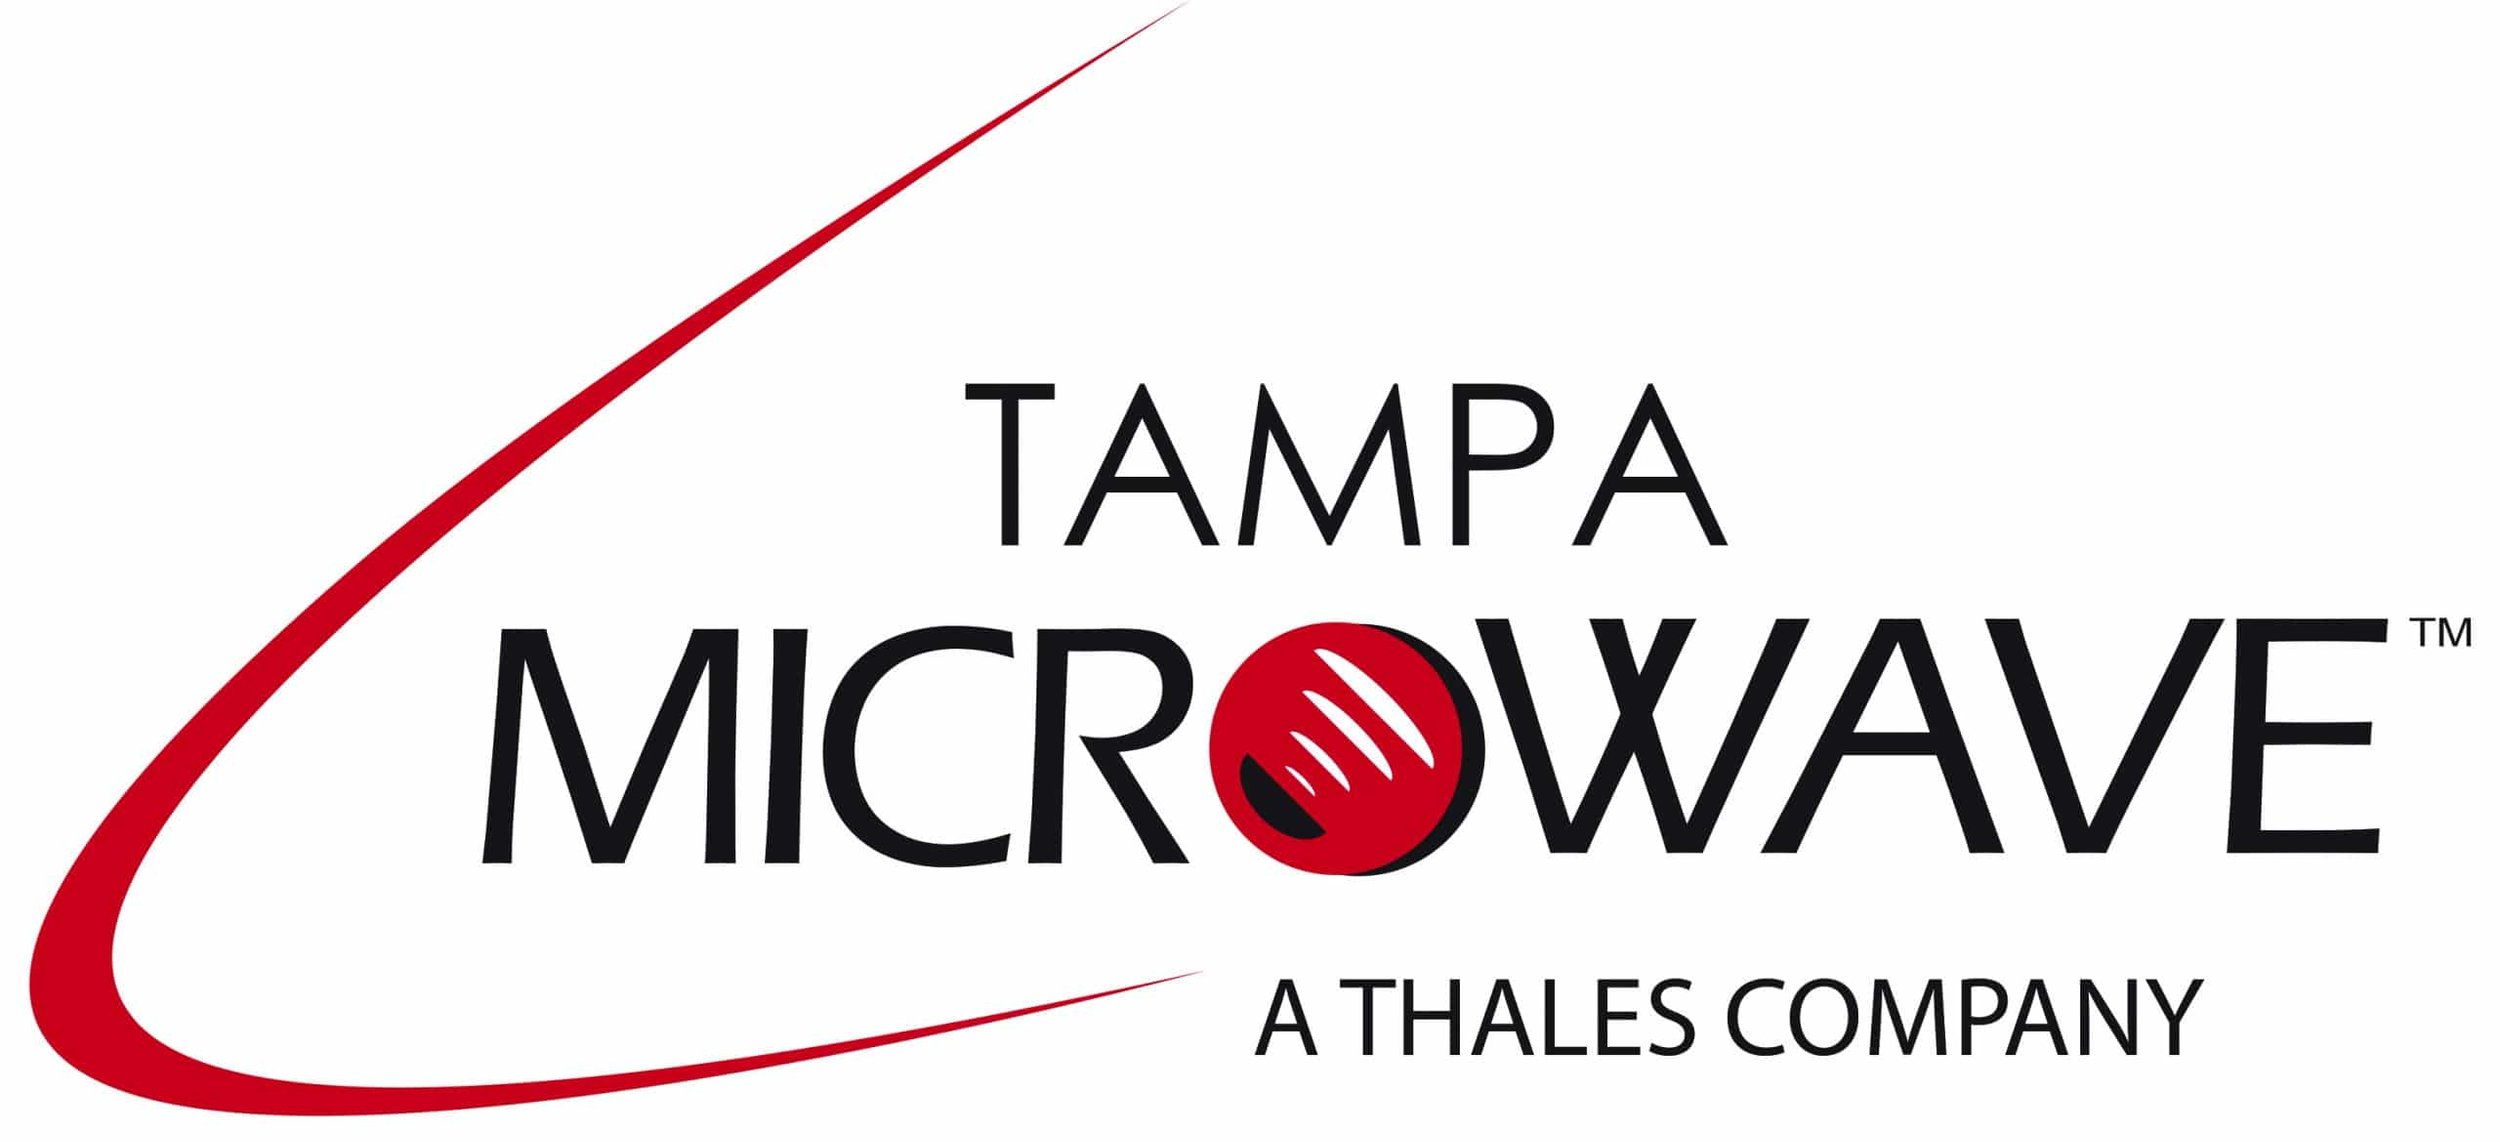 Tampa-Microwave-Logo-cymk-Hi-Res-scaled.jpg